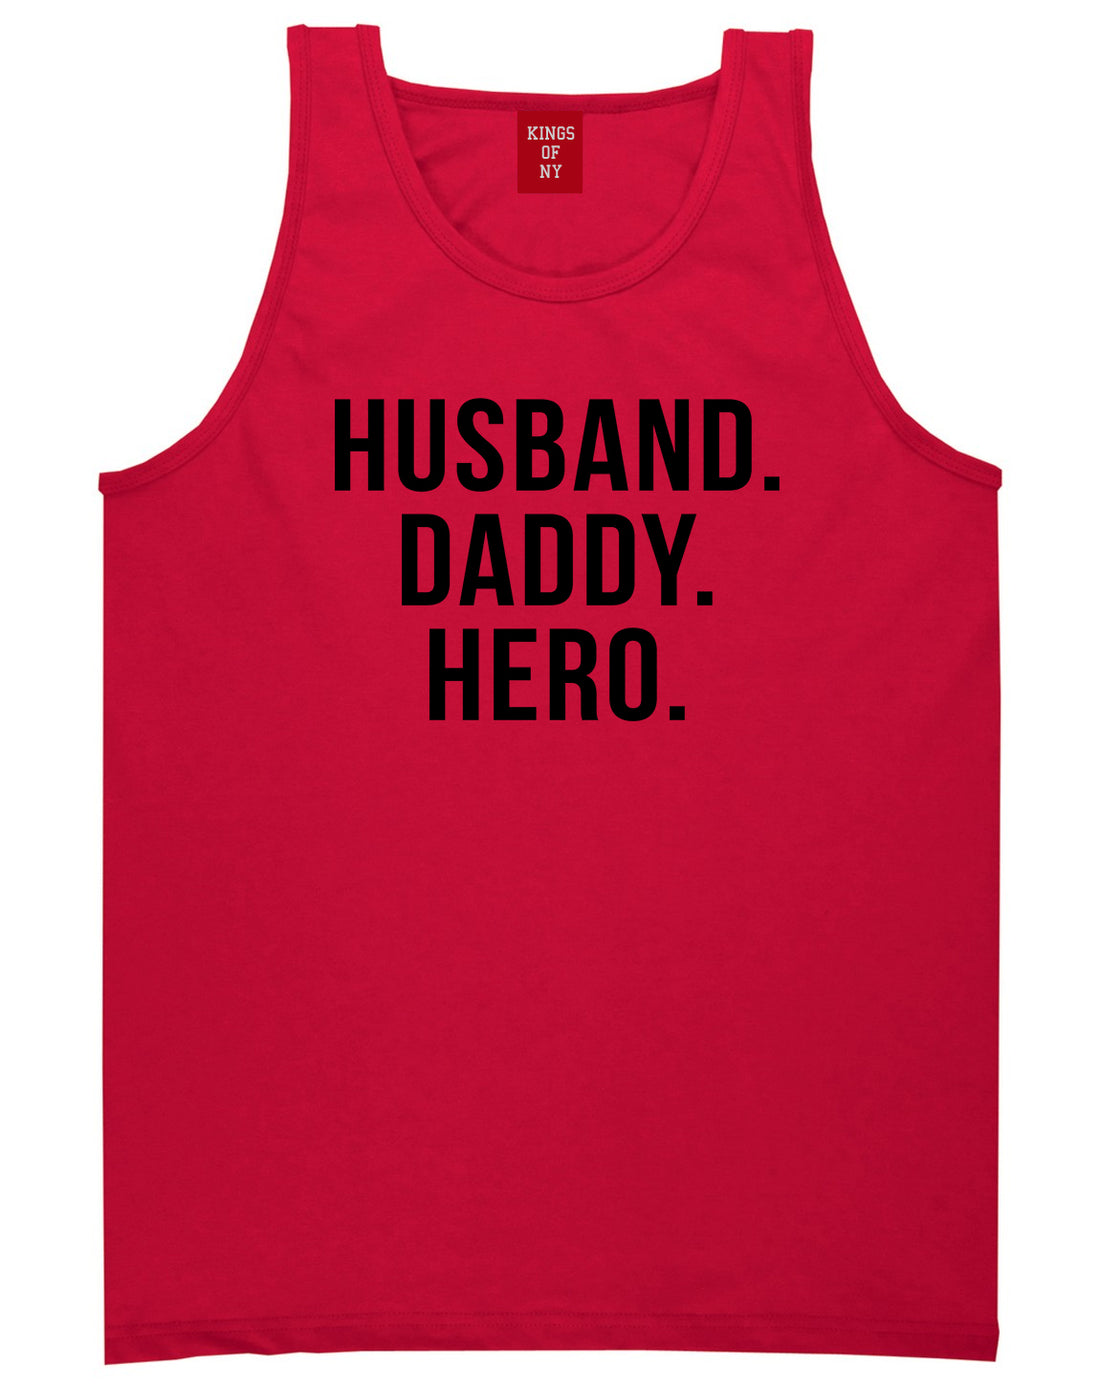 Husband Dad Hero Mens Tank Top Shirt Red by Kings Of NY